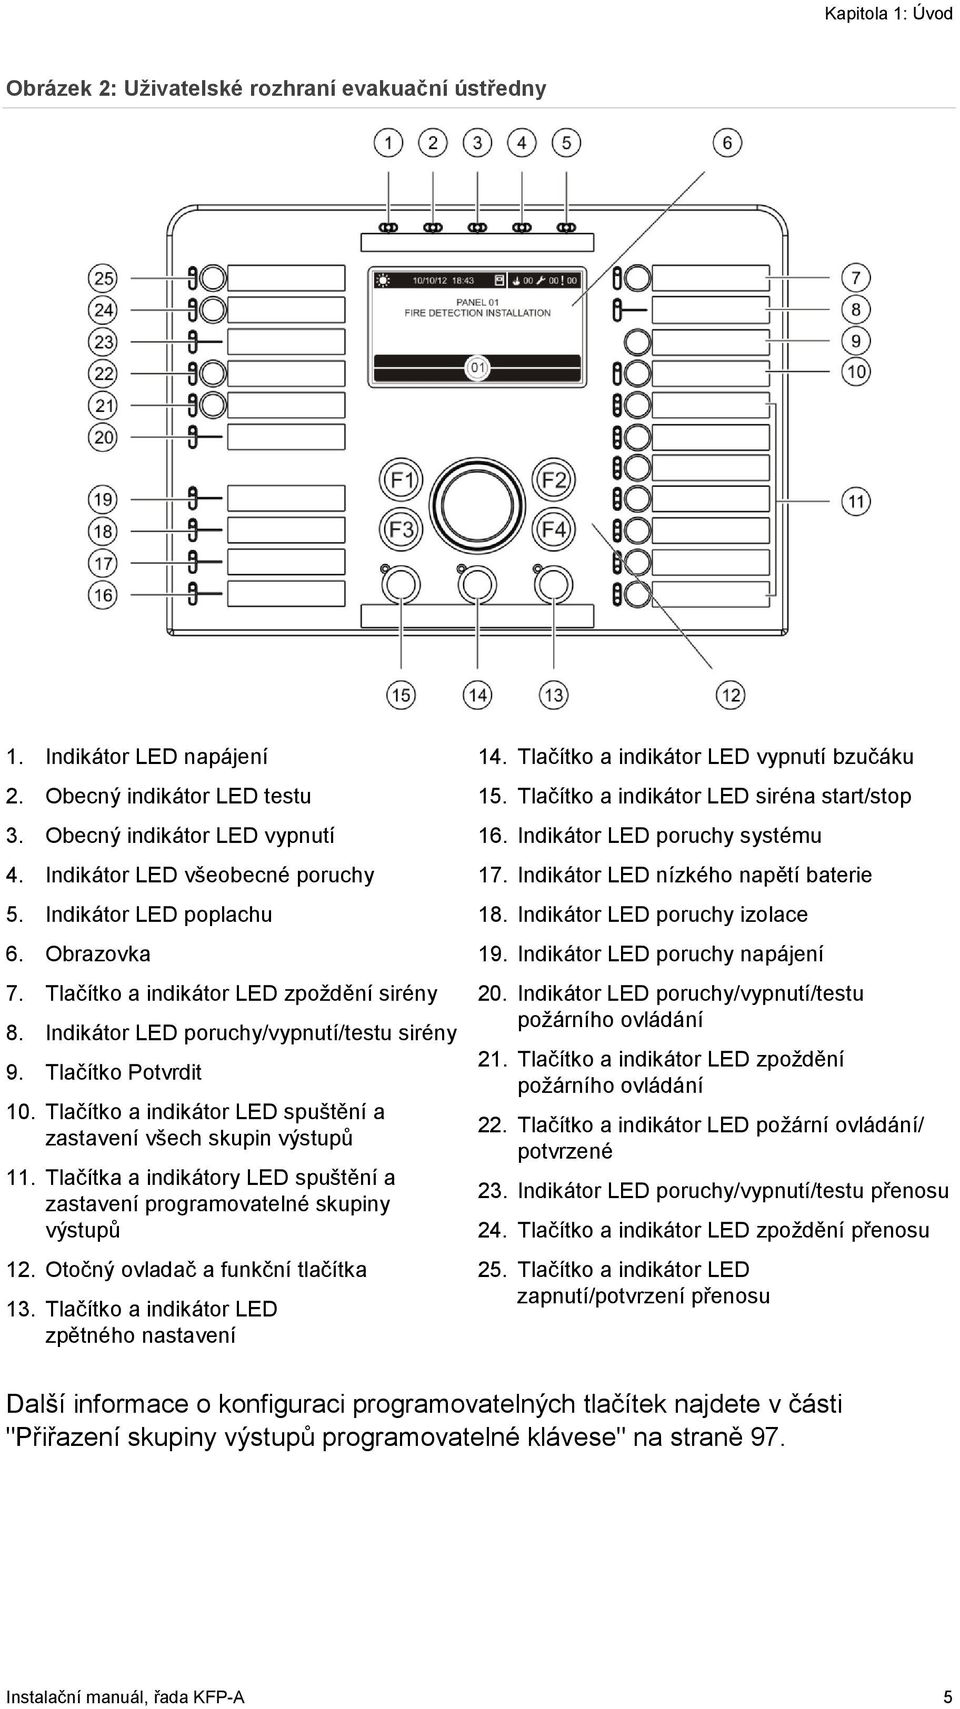 Tlačítko a indikátor LED spuštění a zastavení všech skupin výstupů 11. Tlačítka a indikátory LED spuštění a zastavení programovatelné skupiny výstupů 12. Otočný ovladač a funkční tlačítka 13.